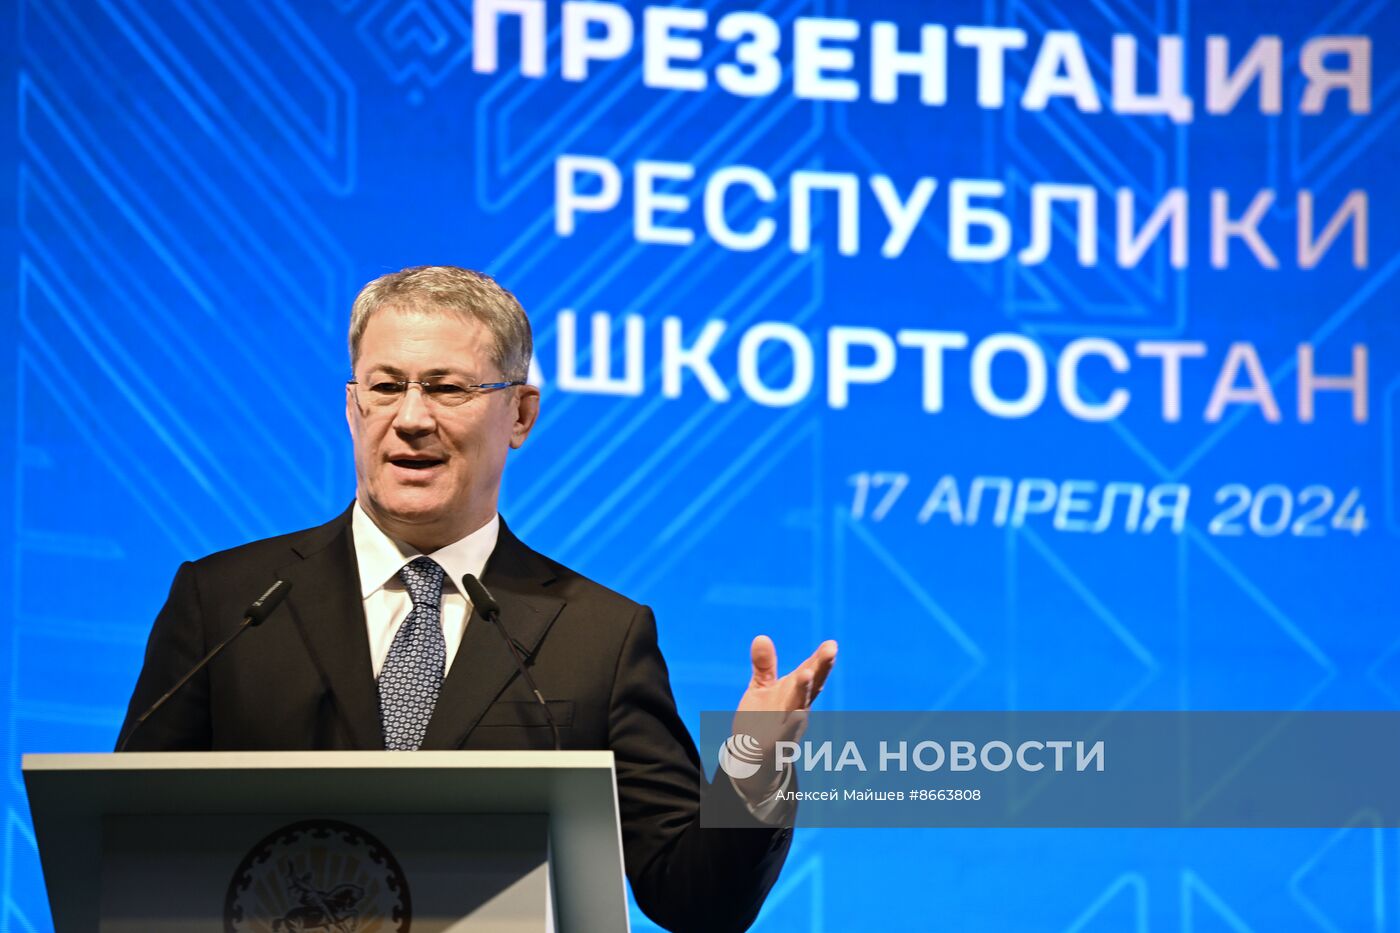 Презентация экономического и инвестиционного потенциала Республики Башкортостан